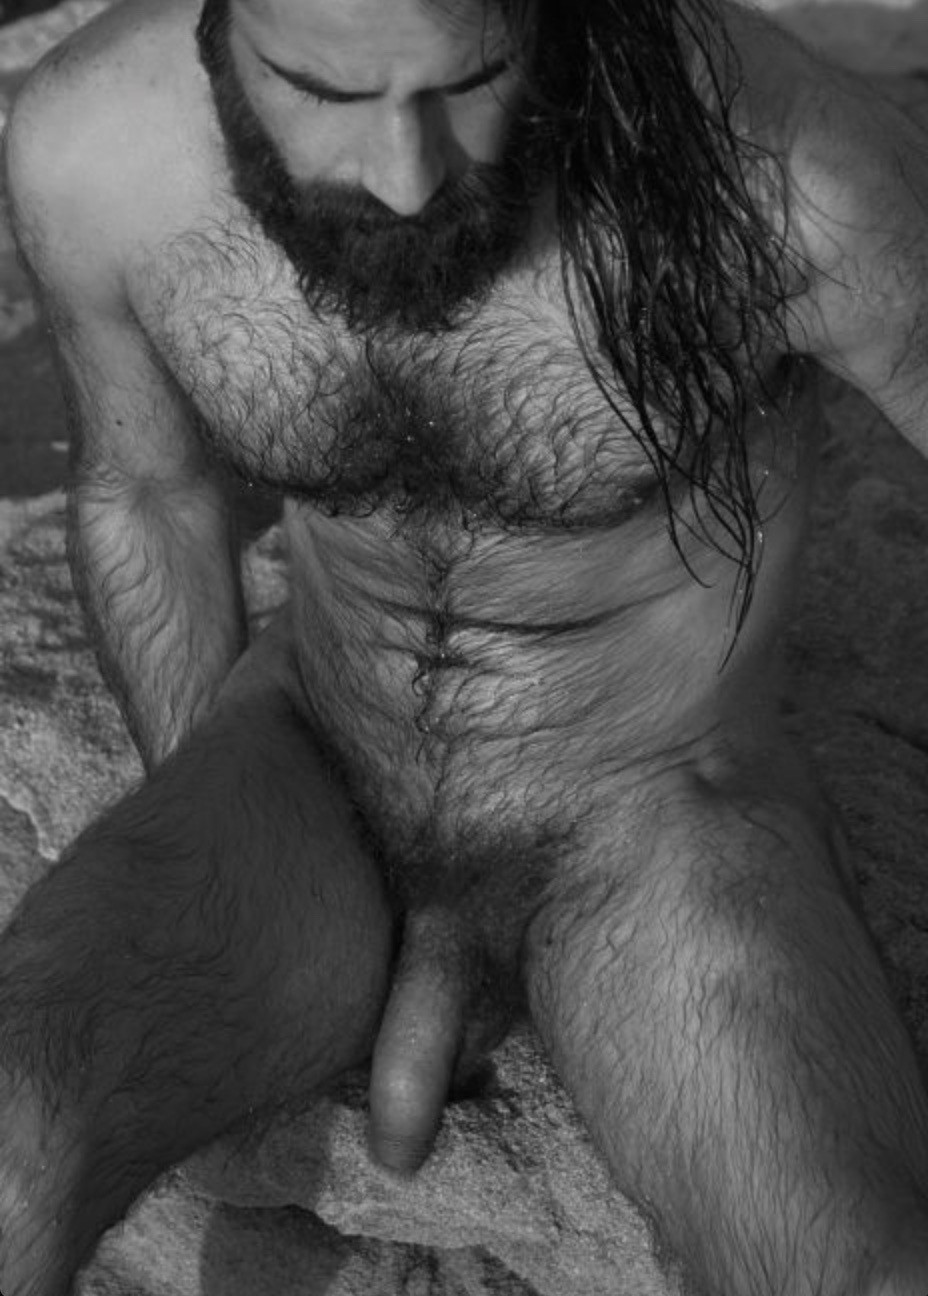 Slideshow hairy chested men tumblr.